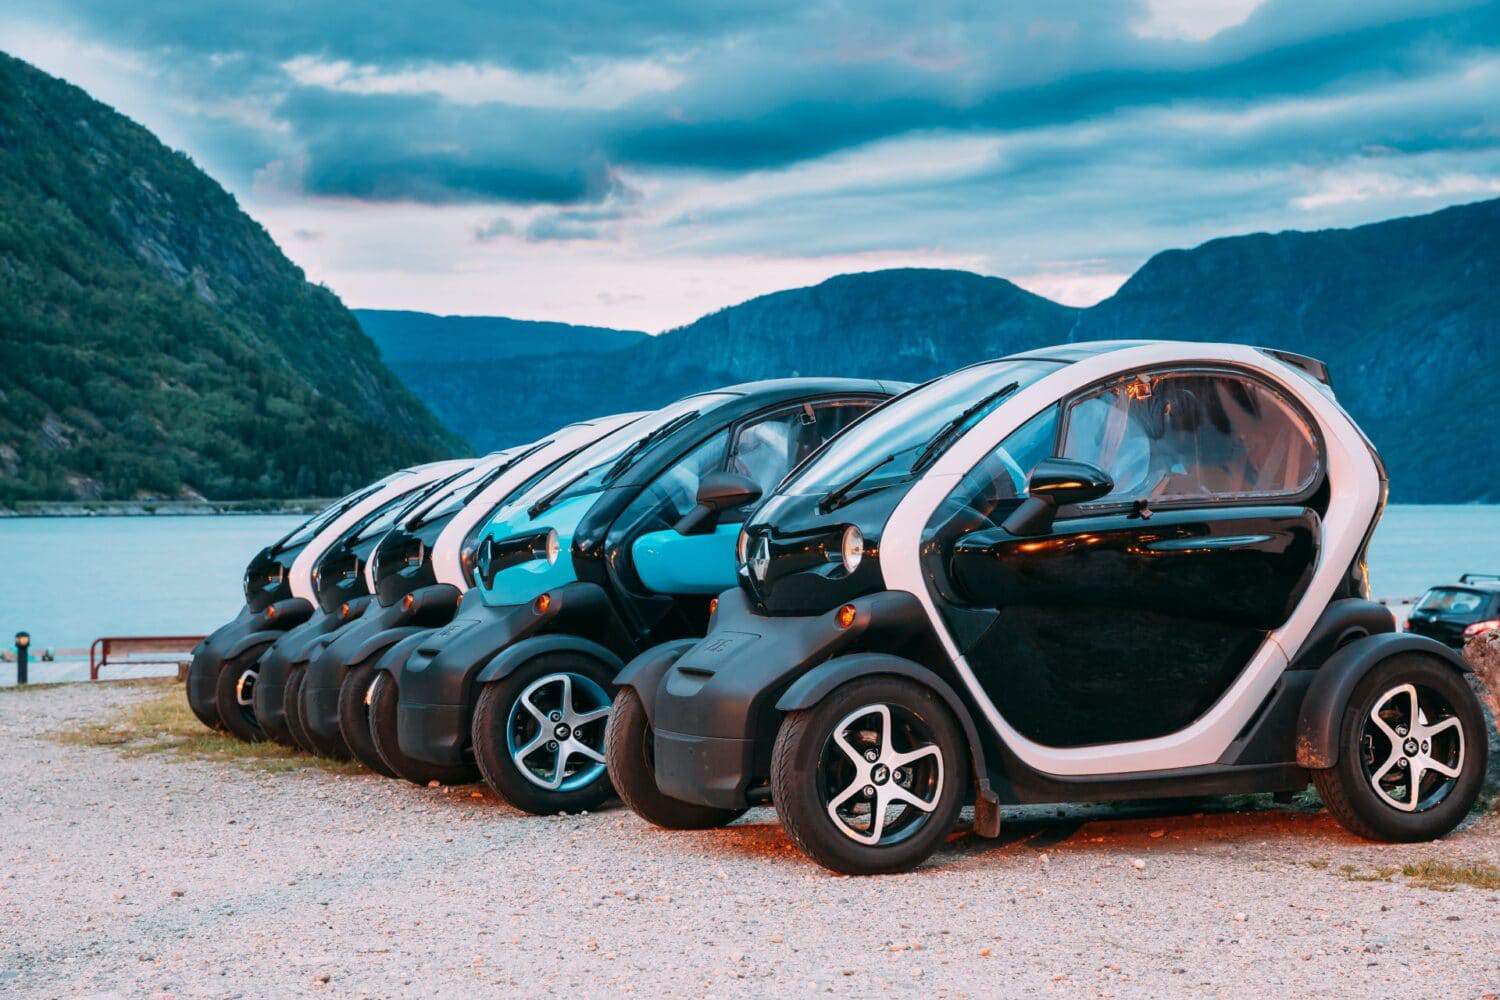 Norwegen mit neuem Zulassungsrekord bei Elektroautos